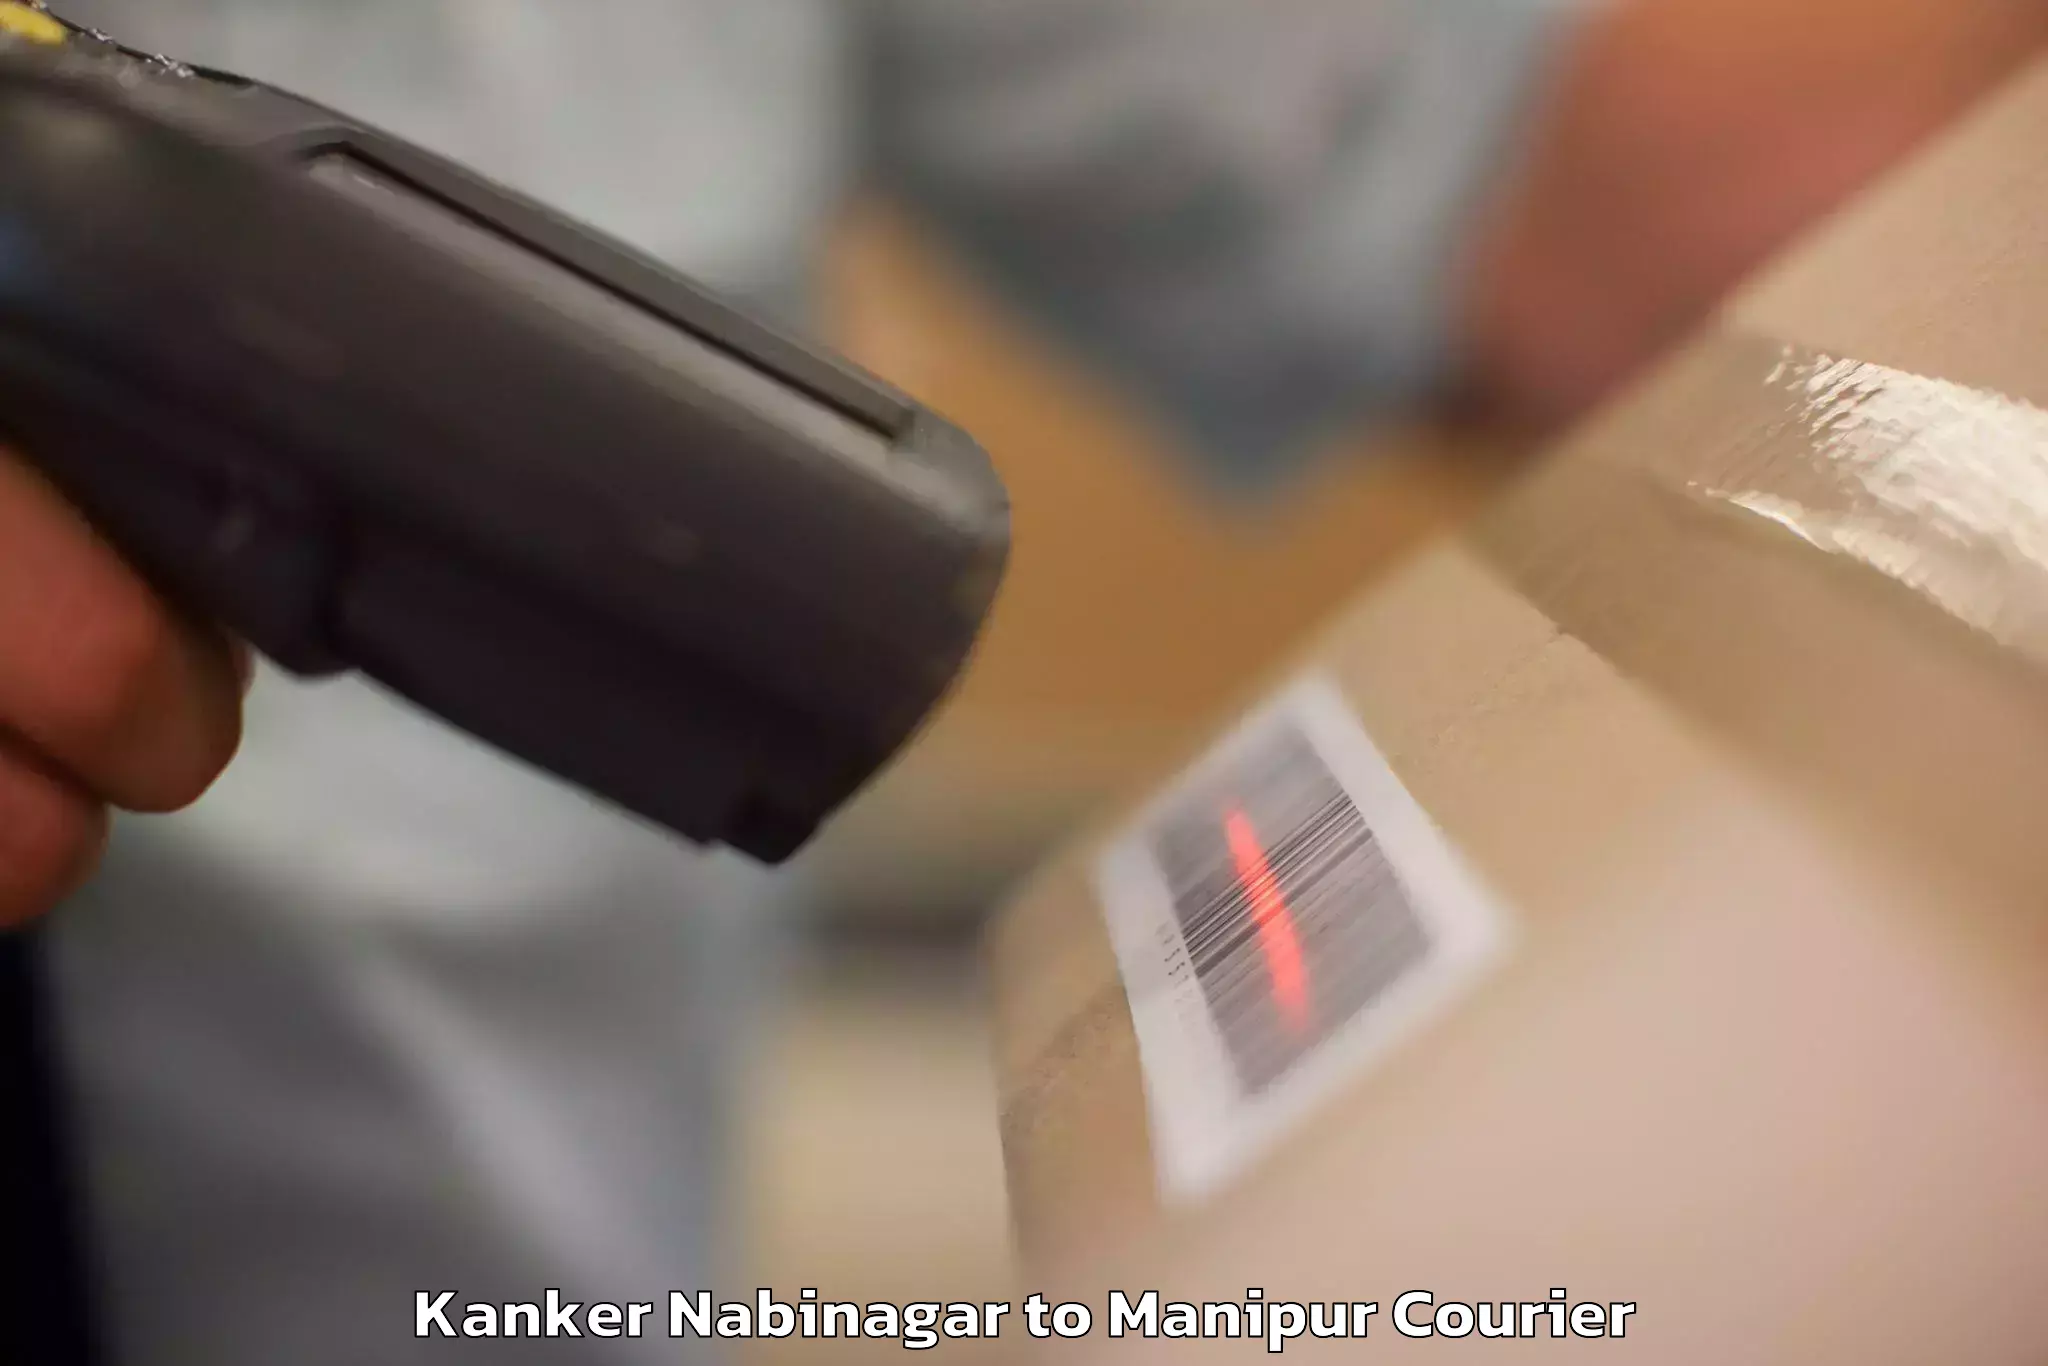 Baggage relocation service Kanker Nabinagar to Senapati